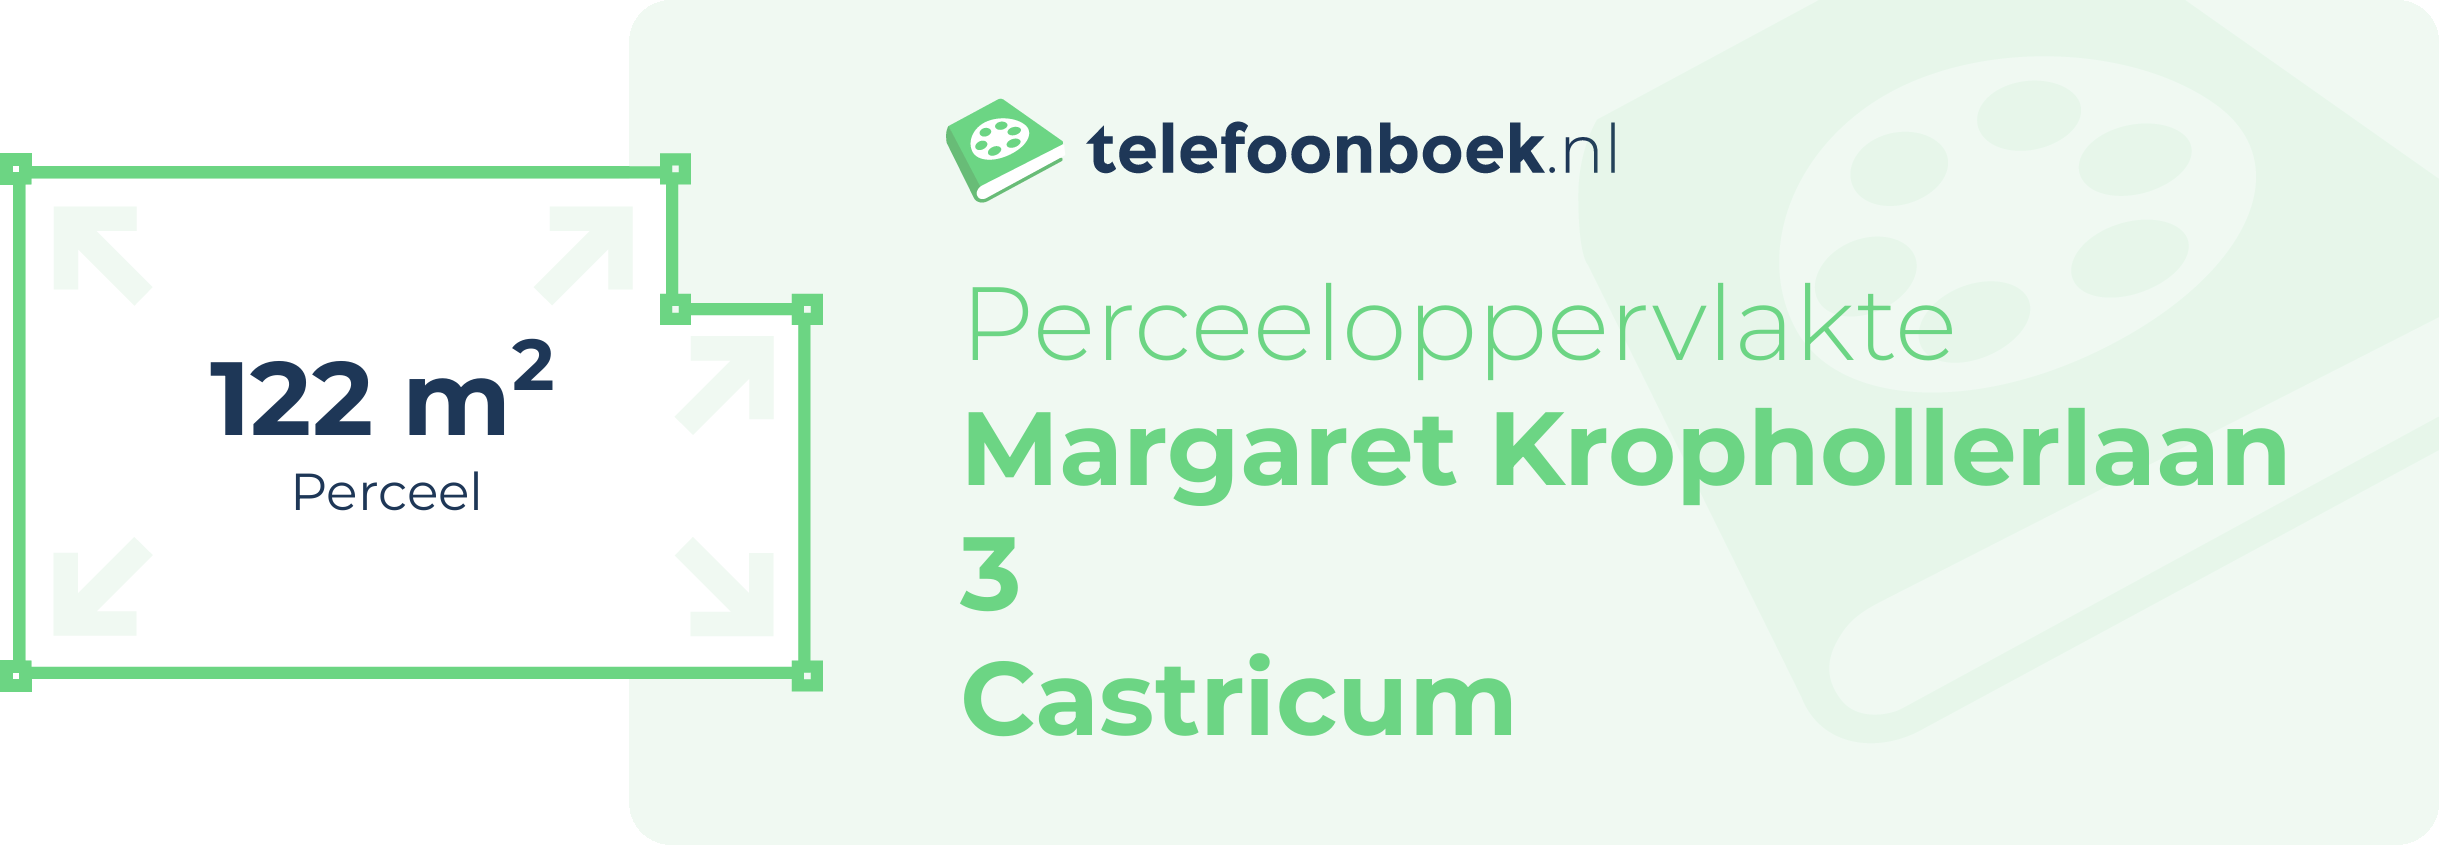 Perceeloppervlakte Margaret Krophollerlaan 3 Castricum